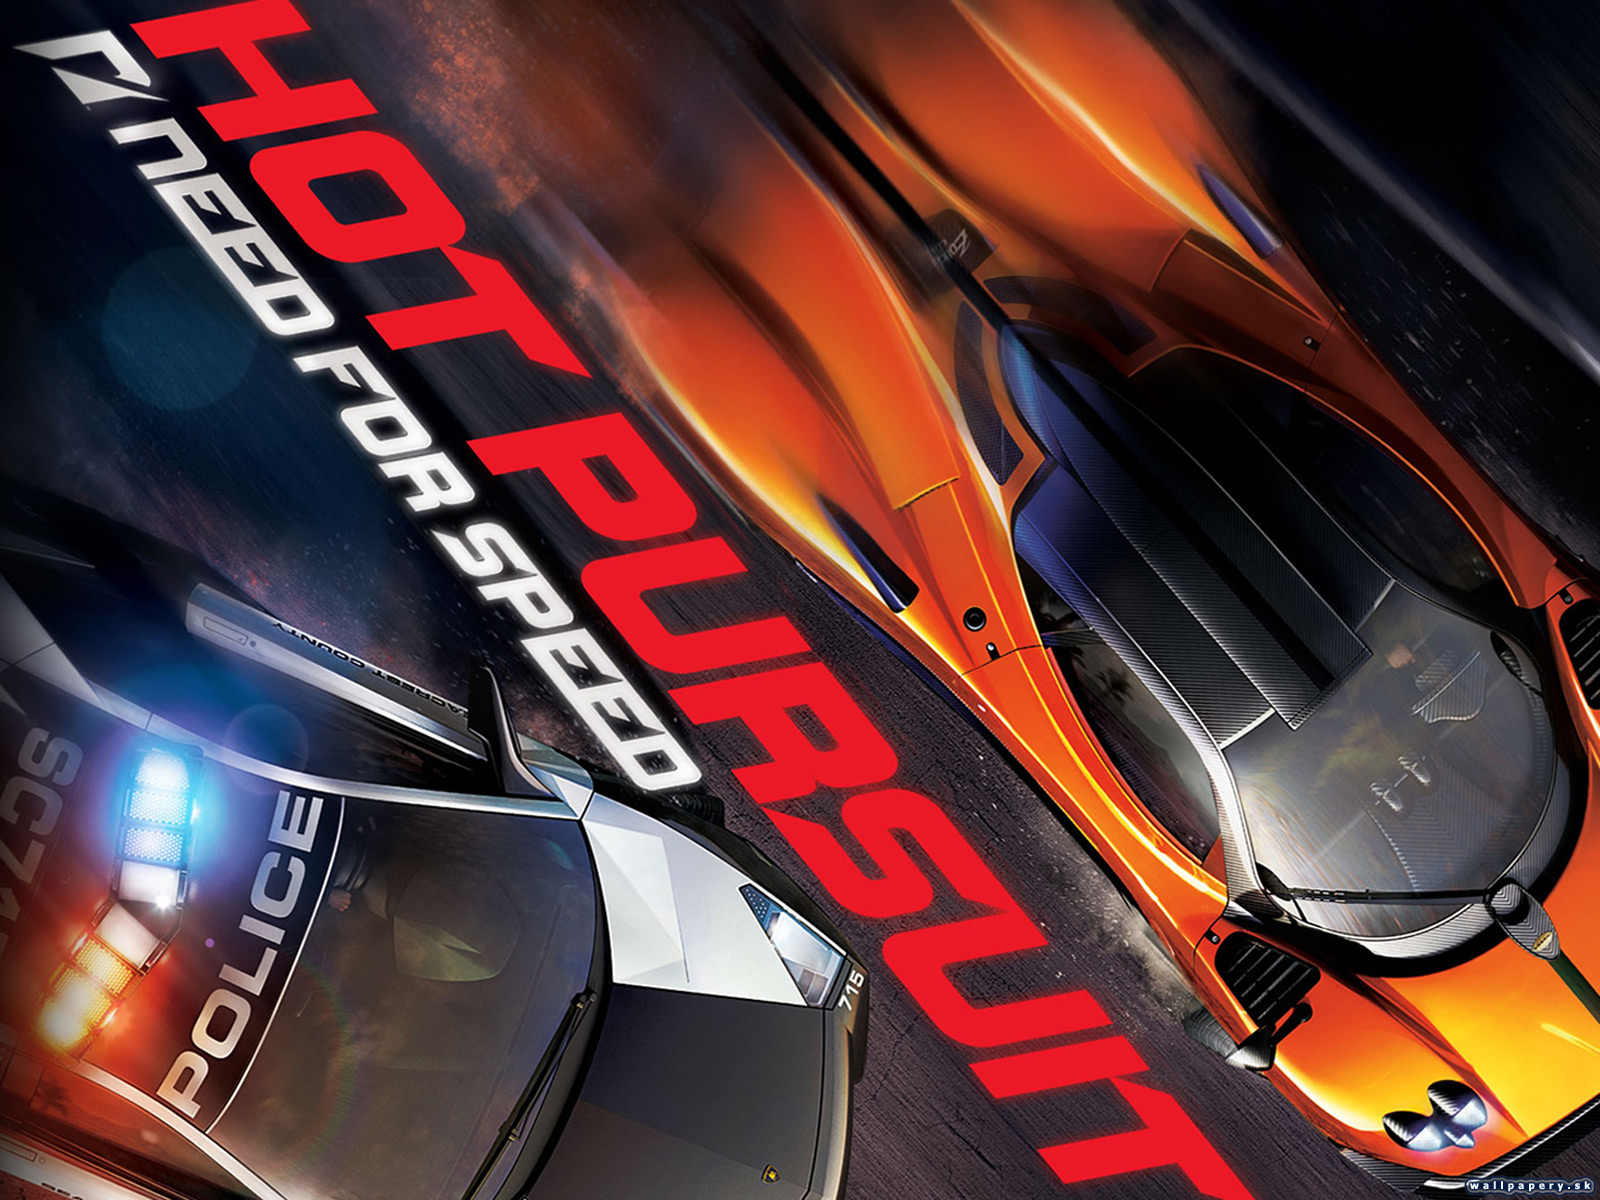 Онемело speed speed wav. Need for Speed: hot Pursuit (2010) обложка. NFS hot Pursuit 2010 обложка. Need for Speed hot Pursuit 2010 Remastered. Need for Speed пурсуит.